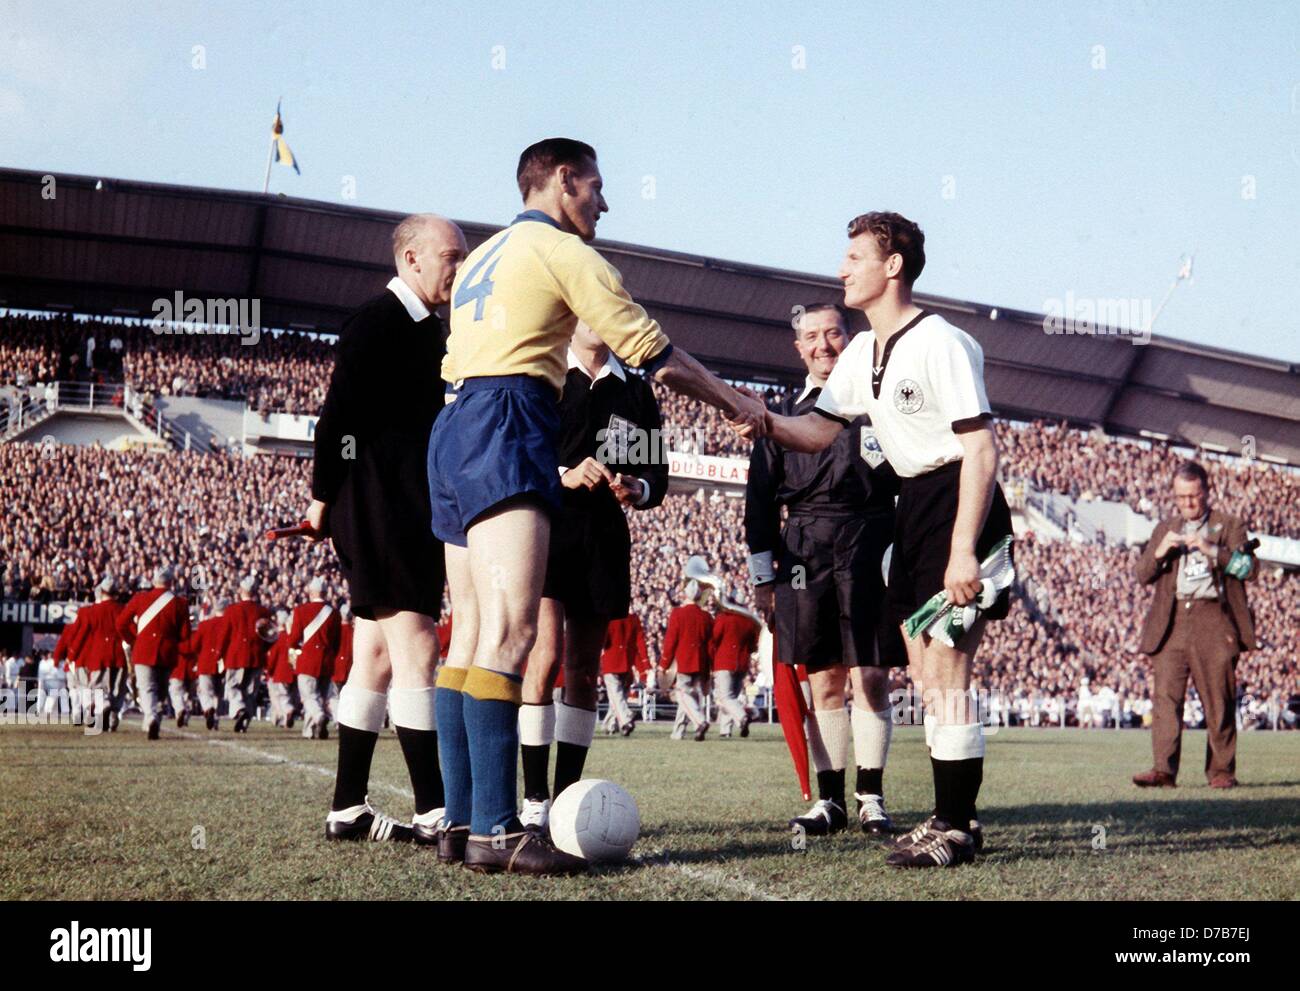 Hans Schaefer (r), el capitán del equipo nacional de fútbol alemán, y Nils Liedholm (l), capitán del equipo sueco, intercambian sus respectivos del equipo banderines antes del Kick-off de la Copa Mundial de 1958, semifinal frente a 49.500 espectadores en el estadio Ullevi de Gotemburgo, Suecia el 24 de junio de 1958. Alemania perdió el partido por un marcador de 1:3. Foto de stock